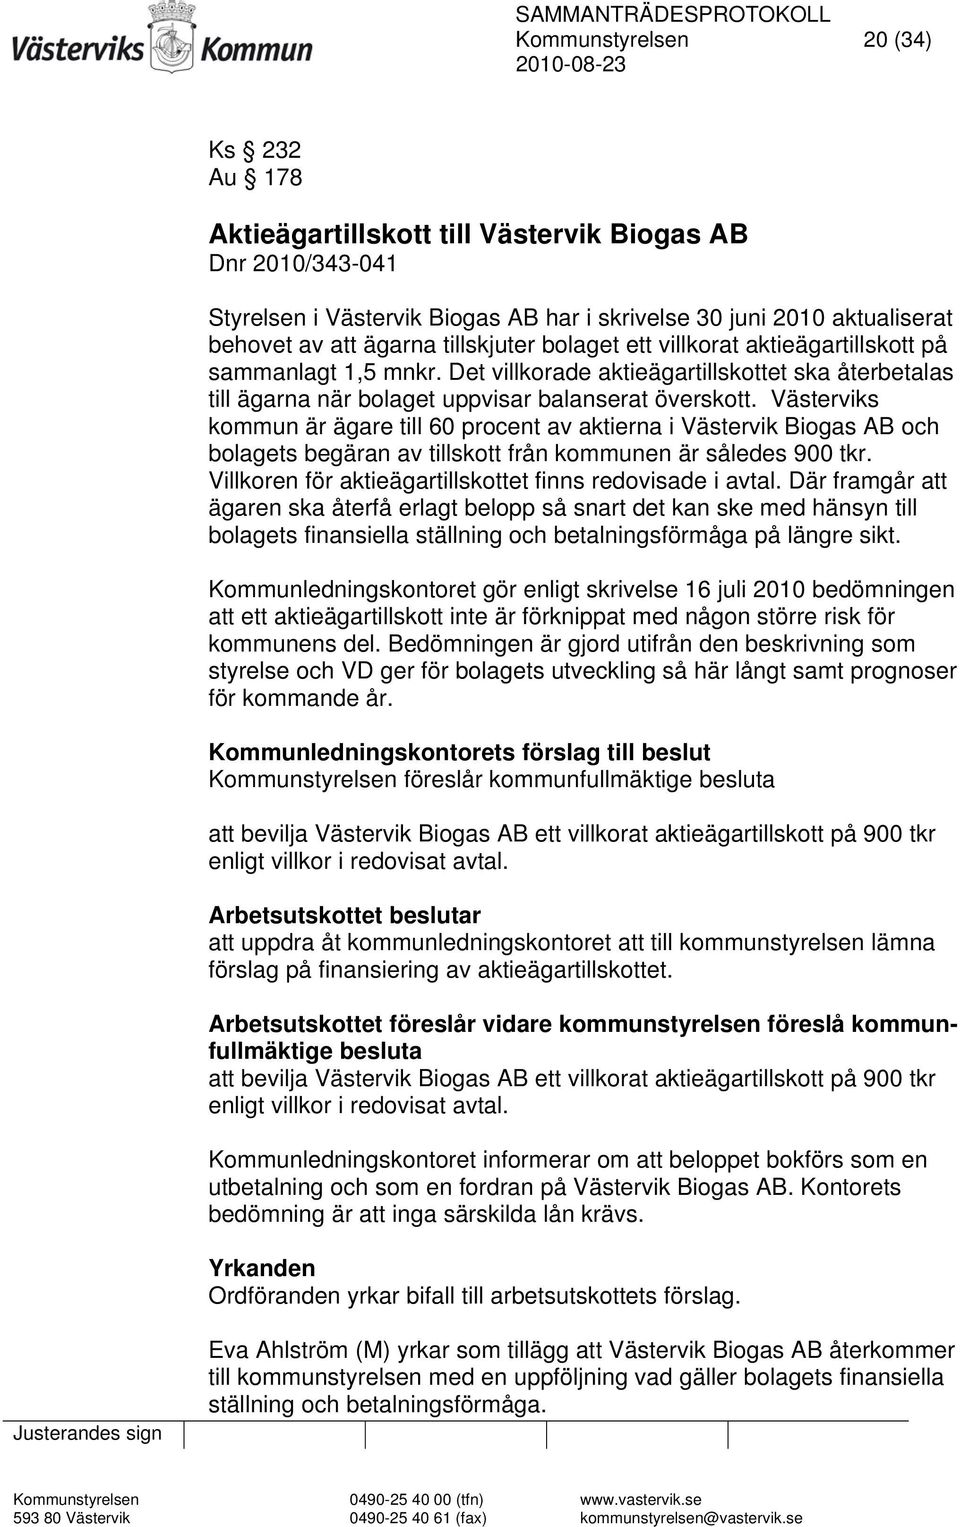 Västerviks kommun är ägare till 60 procent av aktierna i Västervik Biogas AB och bolagets begäran av tillskott från kommunen är således 900 tkr.